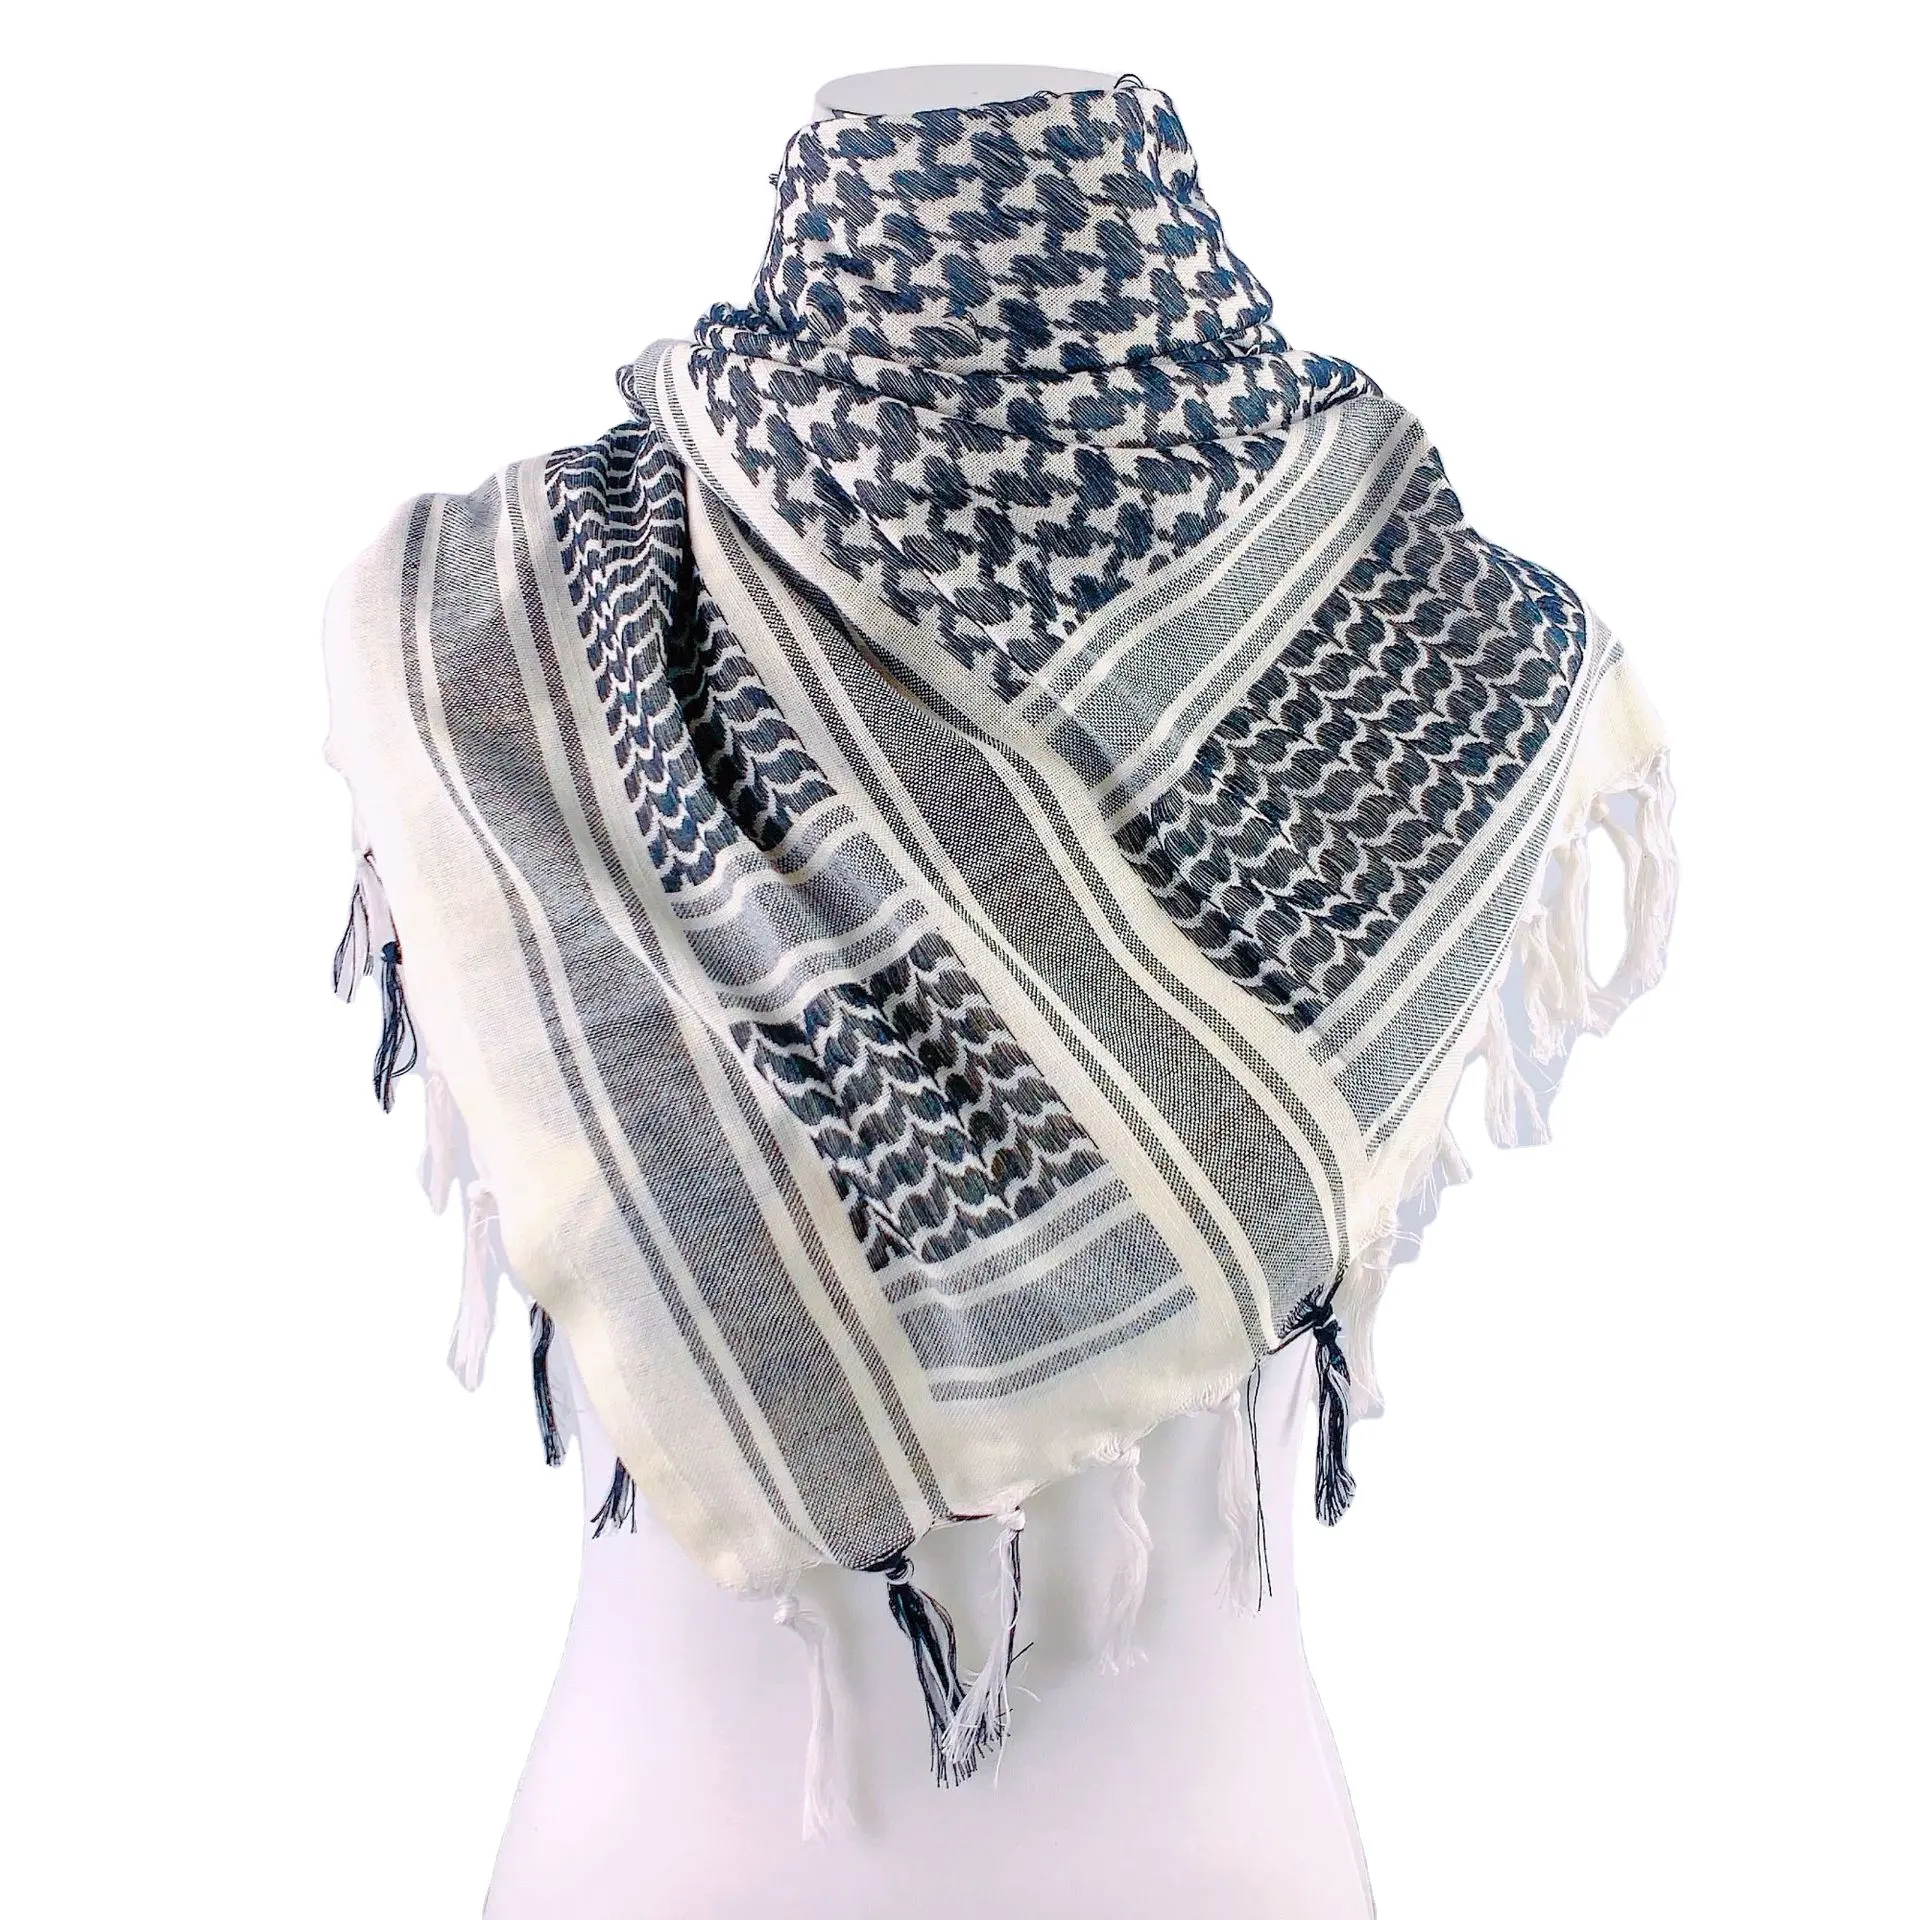 10 màu sắc Shemagh palestine Keffiyeh khăn Arab màu đen trên Trắng kufiya arafat hatta thương hiệu ban đầu bông unisex khăn